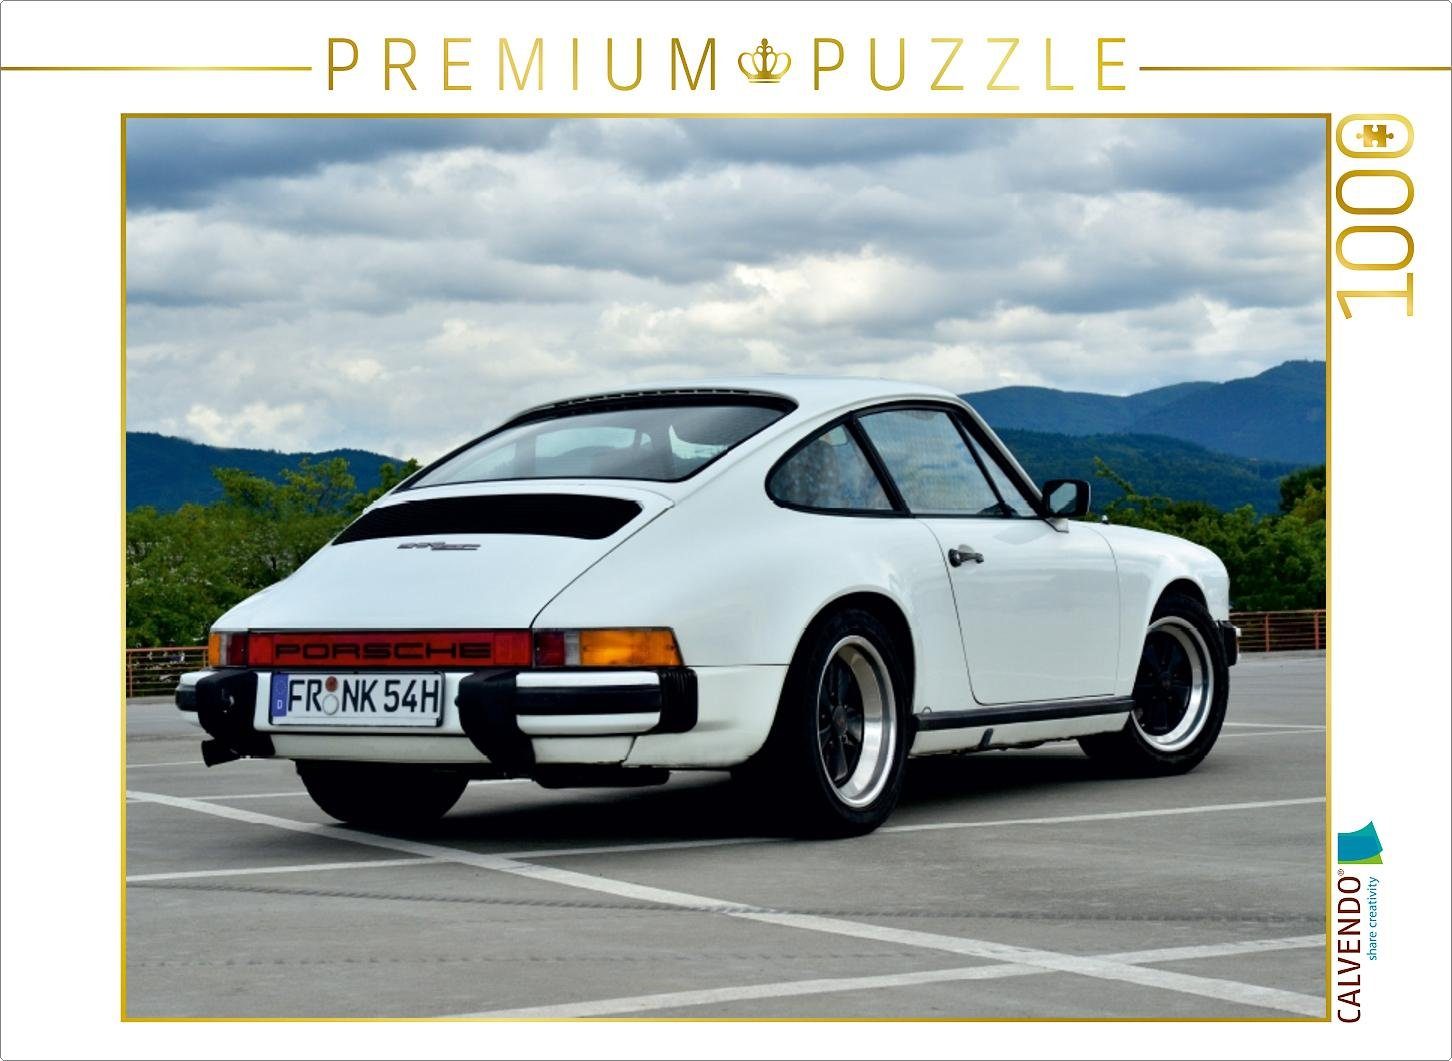 Porsche Aufkleber 70 Jahre Porsche XXL Aufkleber 36 cm Jubiläum